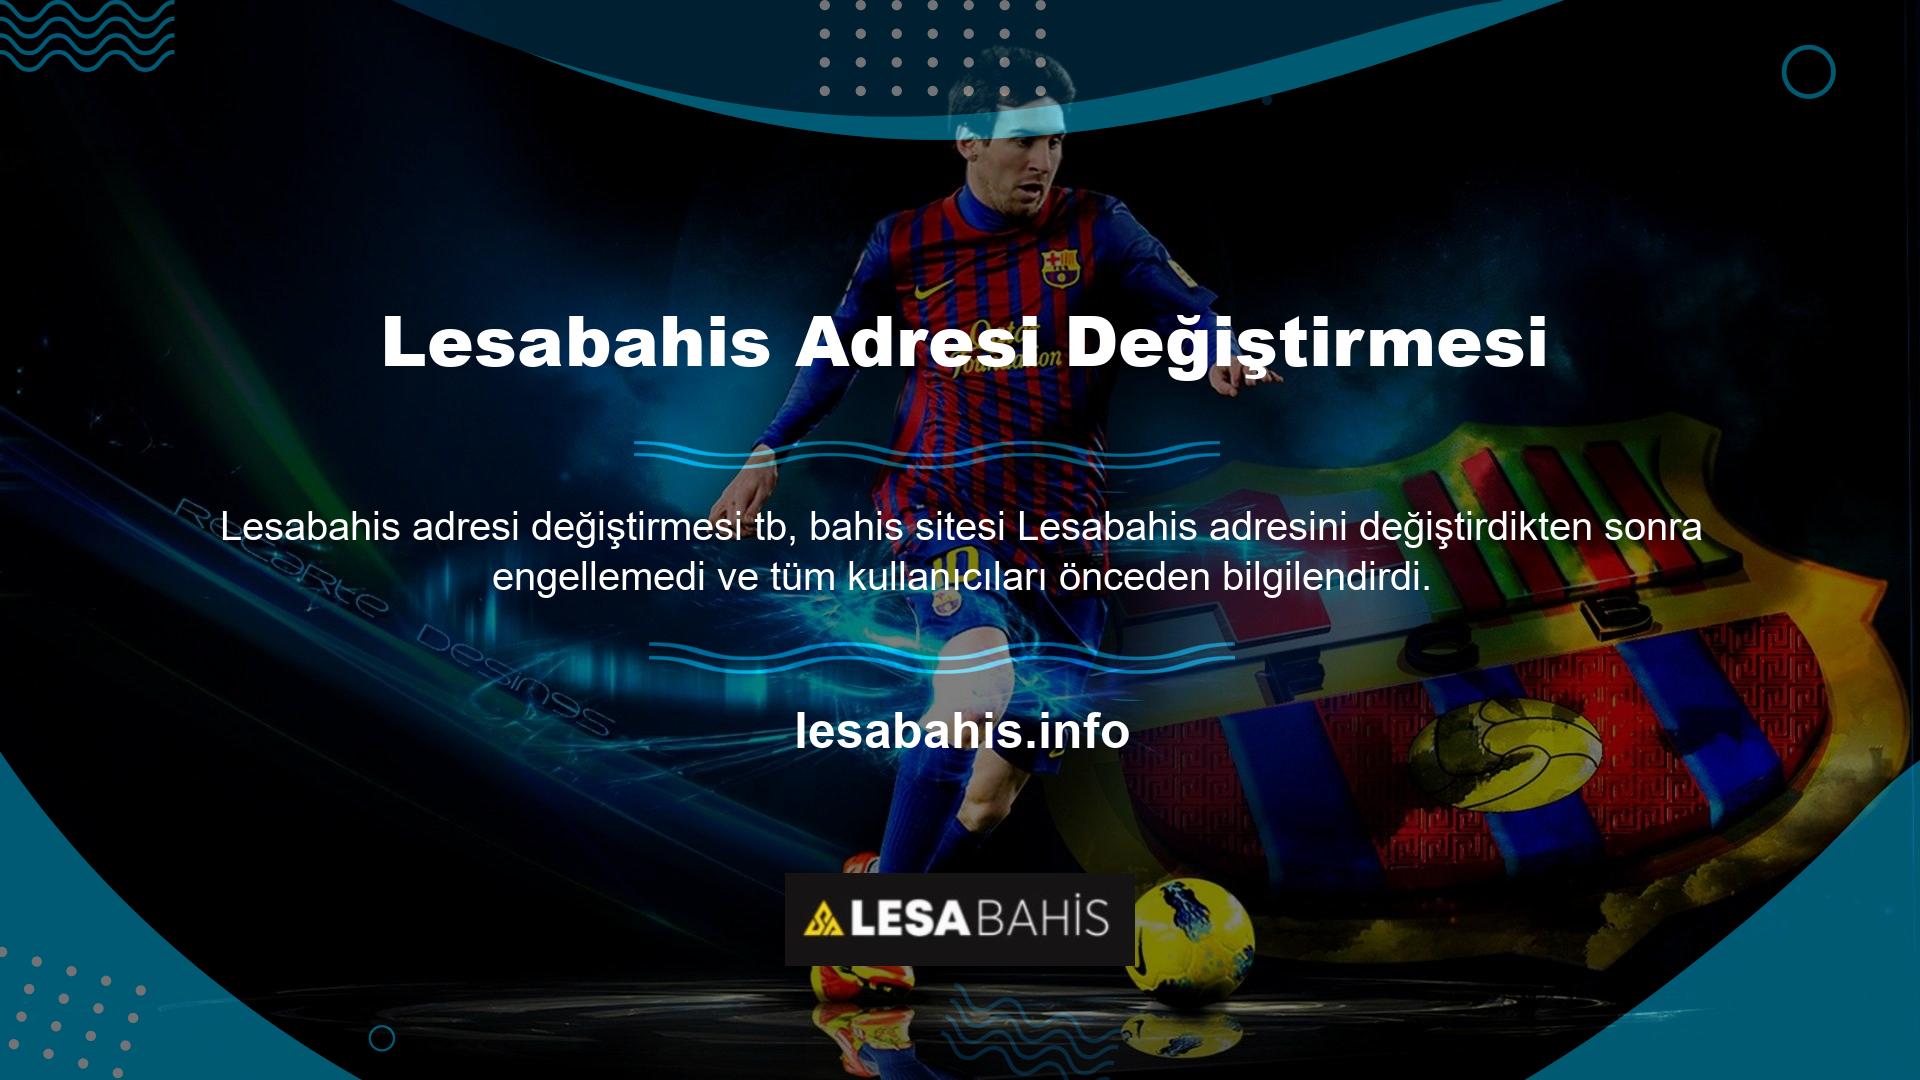 Bu site şu anda kullanıcılarıyla son bağlantı adresi olan Lesabahis alanı üzerinden iletişim kurmaktadır